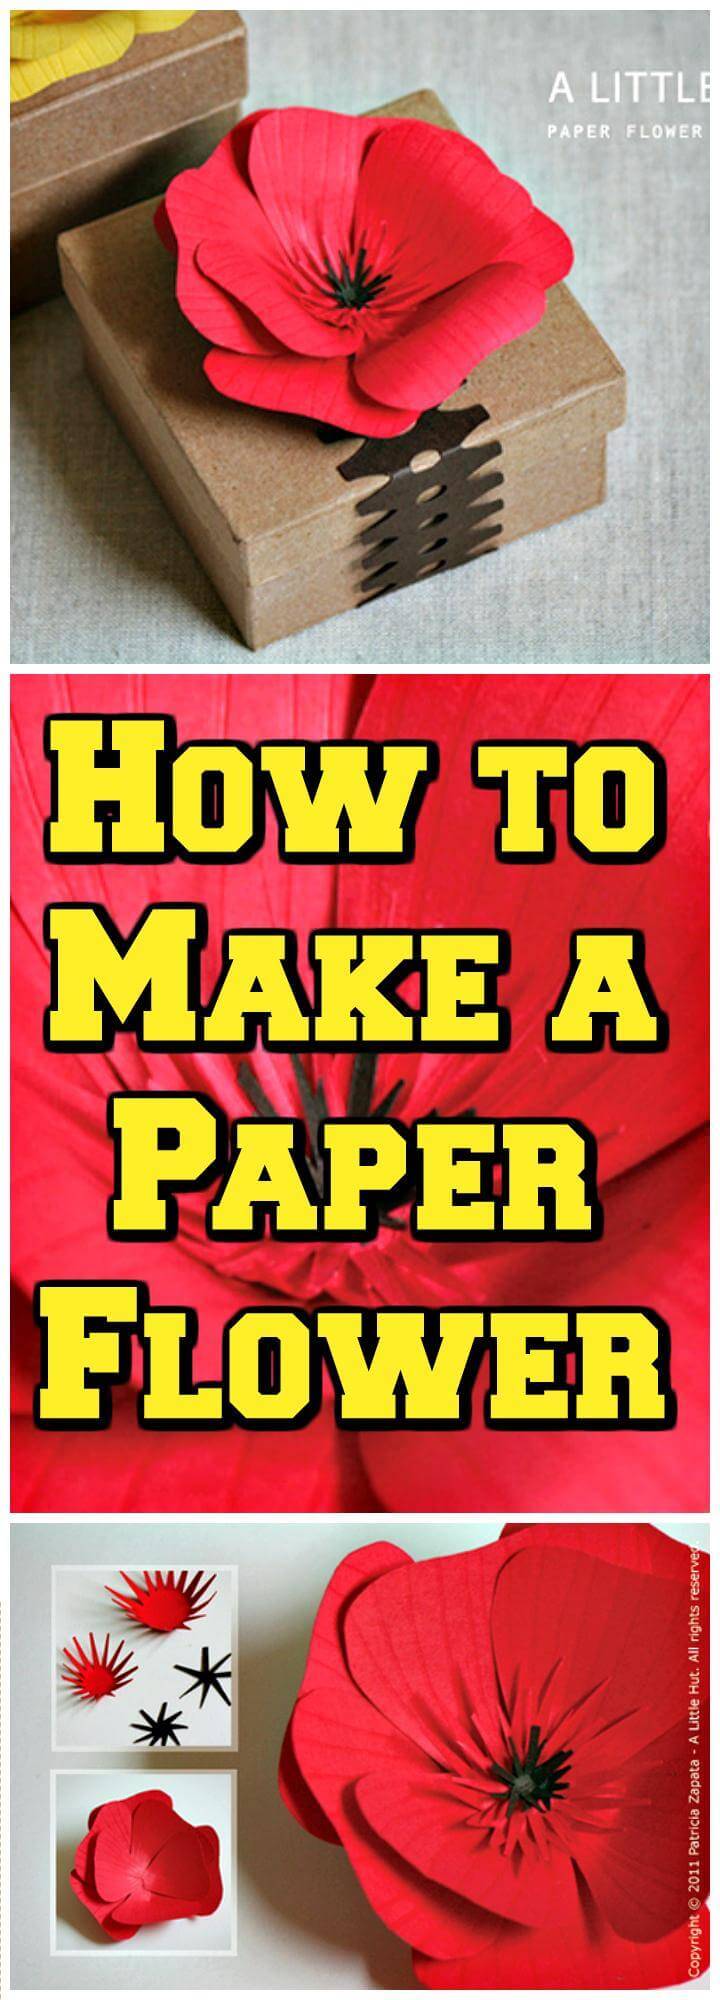 DIY paper flower tutorial